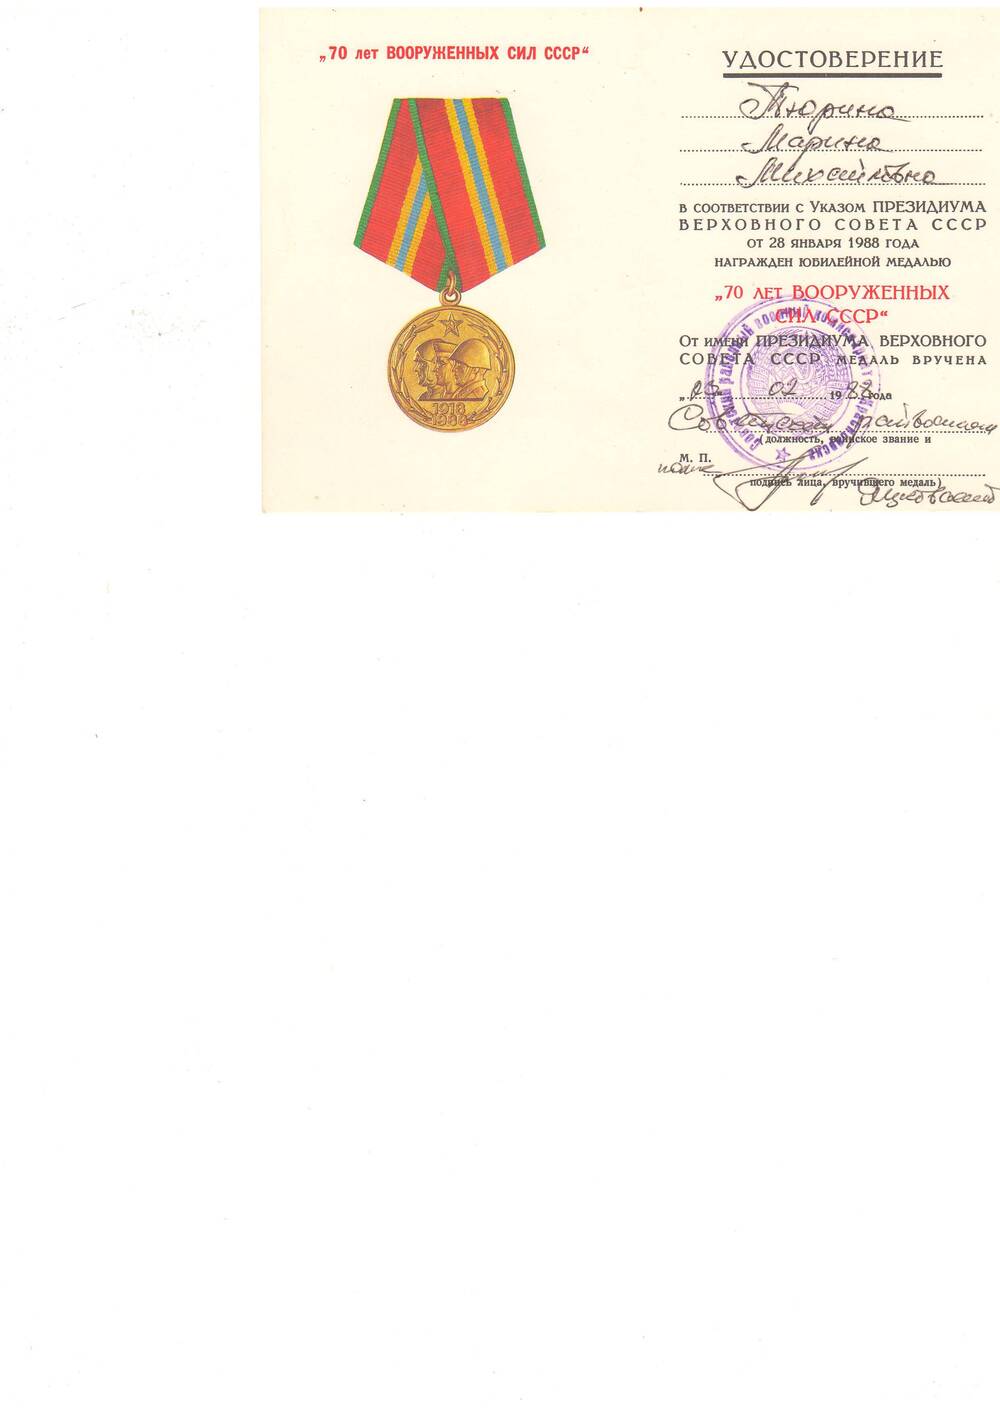 Удостоверение Тюриной М.М. о награждении медалью  70 лет Вооруженных Сил СССР